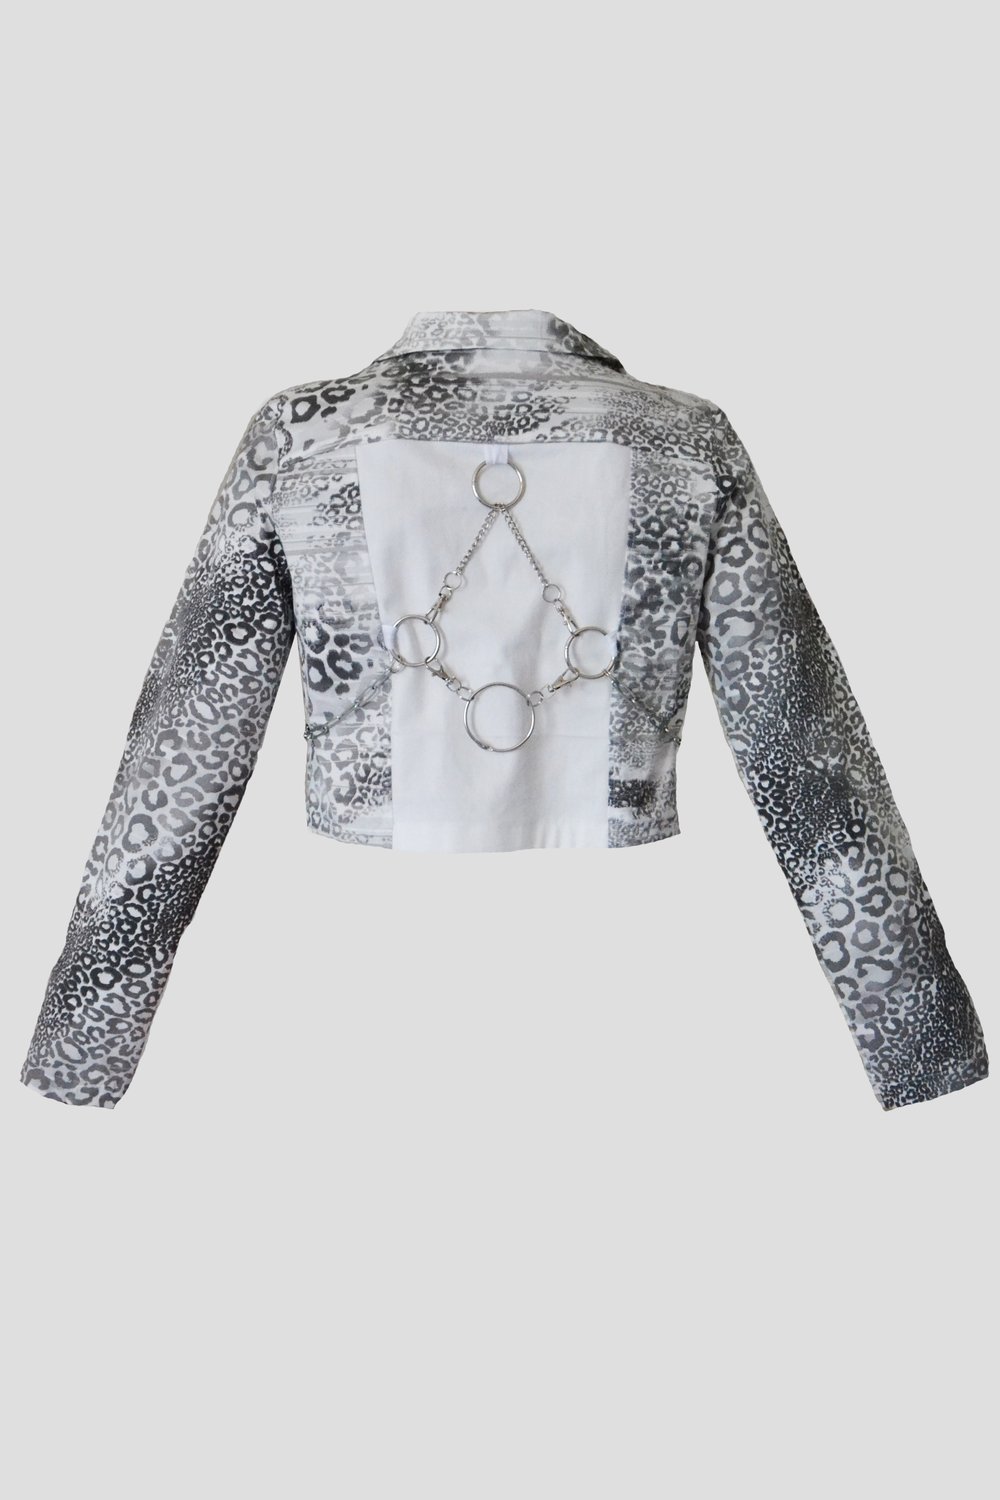 Image of silver snake denim jacket 